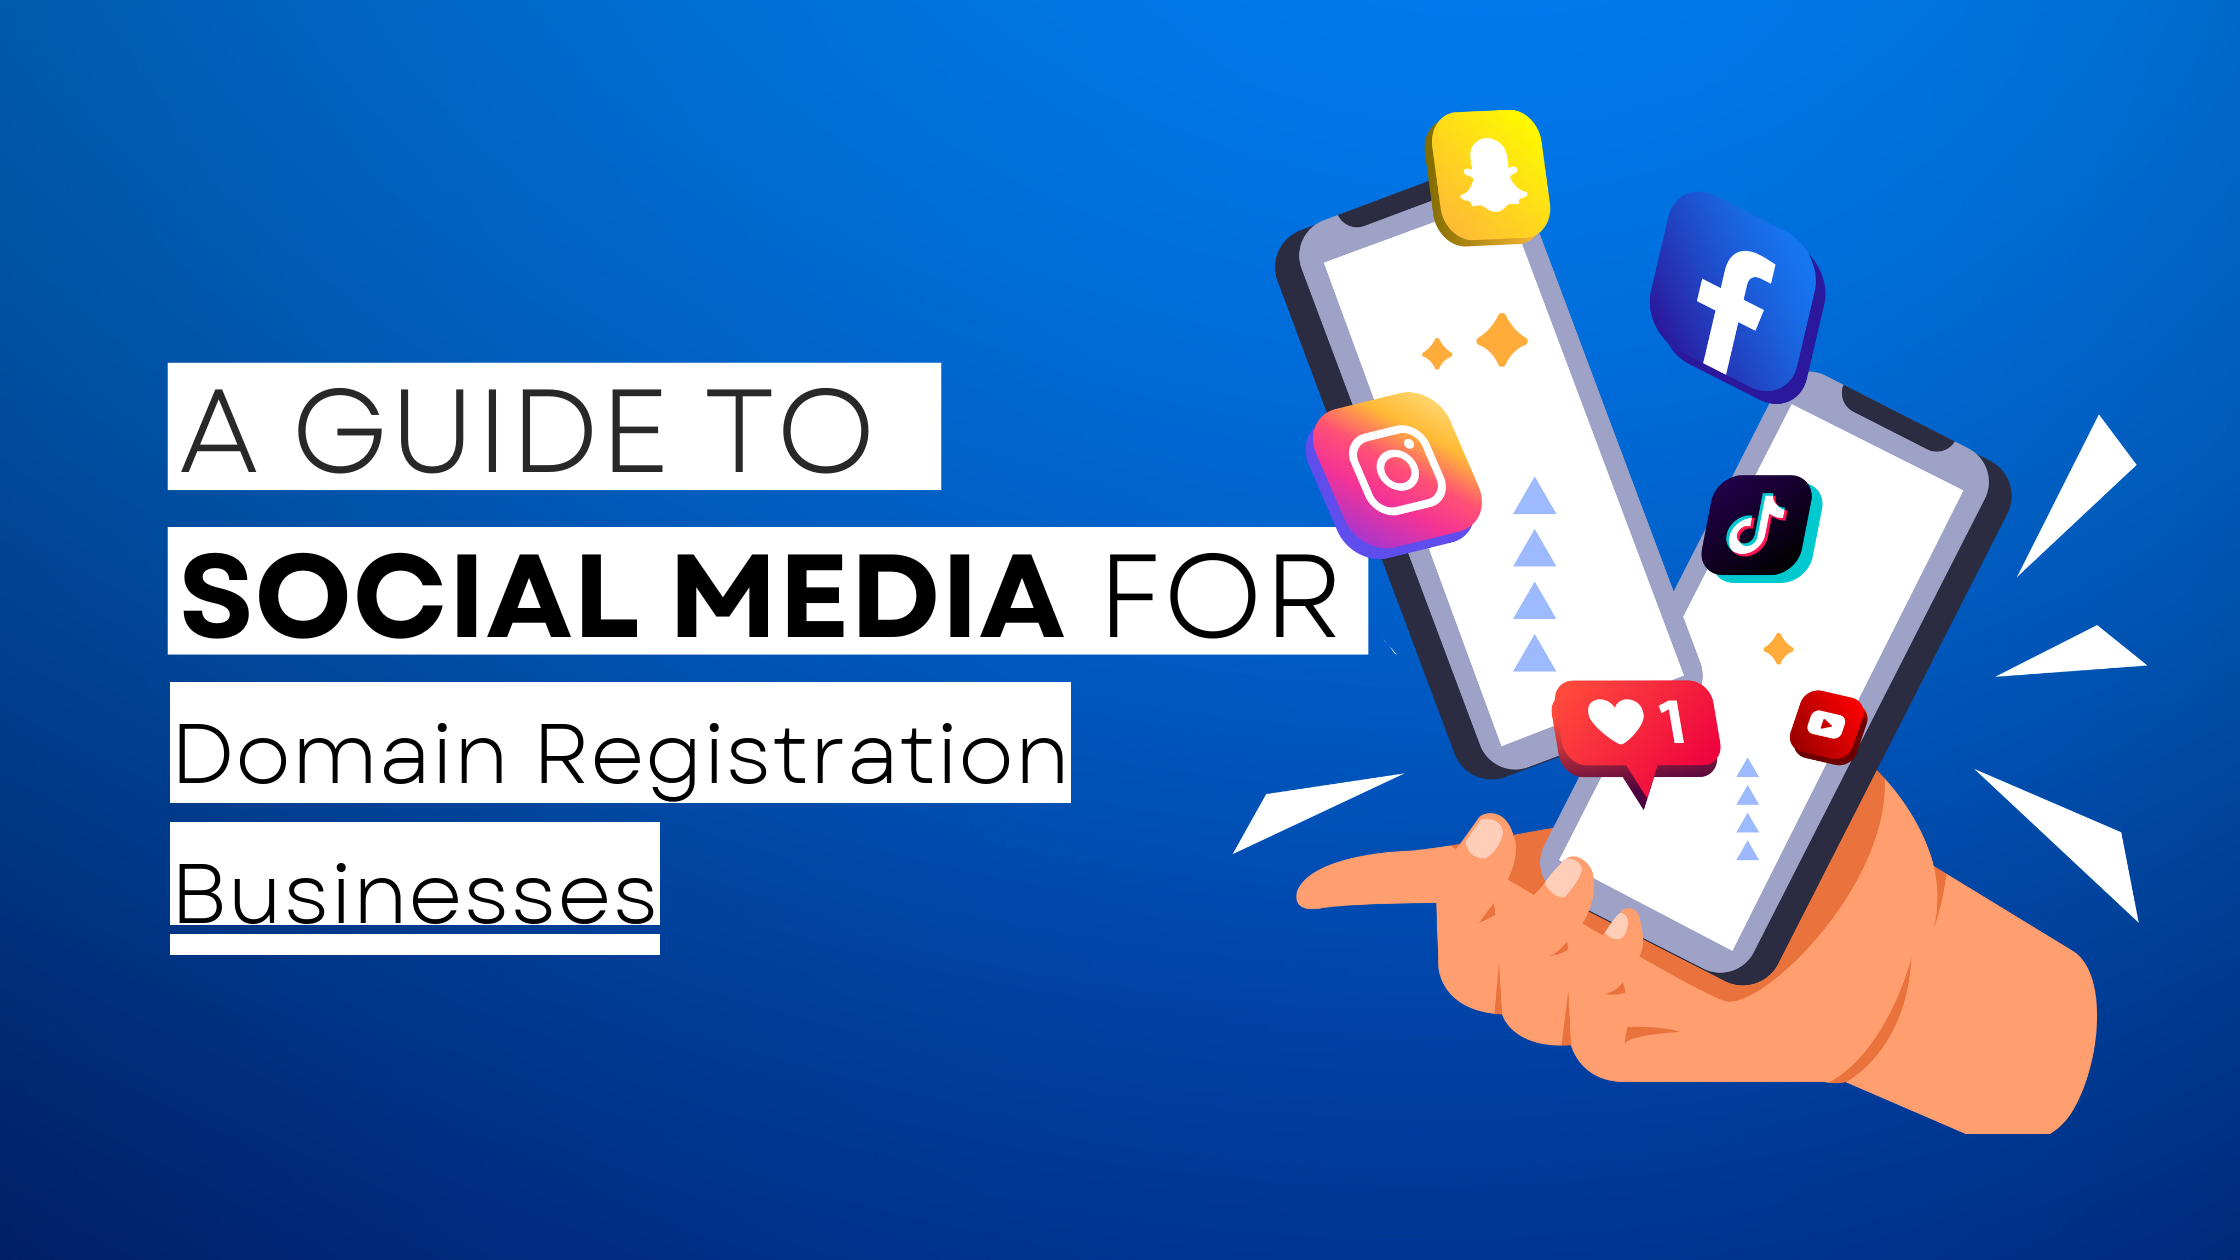 How to start Domain Registration  on social media